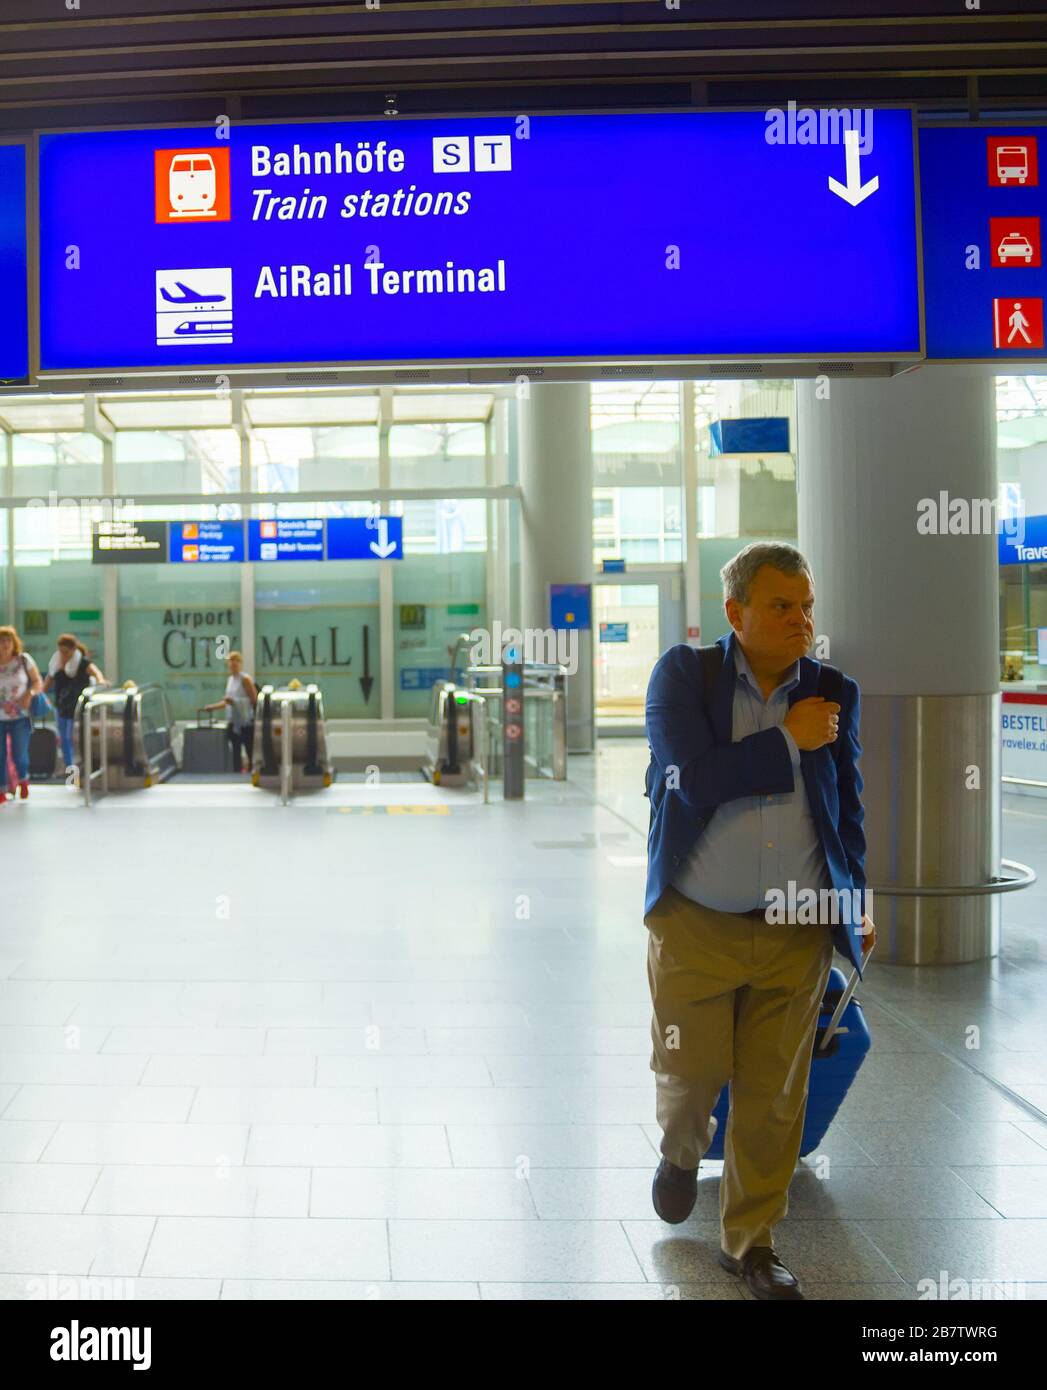 FRANKFURT AM MAIN, Deutschland - 29 AUGUST 2018: Personen mit Gepäck  verlassen den Flughafen Frankfurt, Info Board mit Richtung Schilder über,  Frankfurt/Main Stockfotografie - Alamy